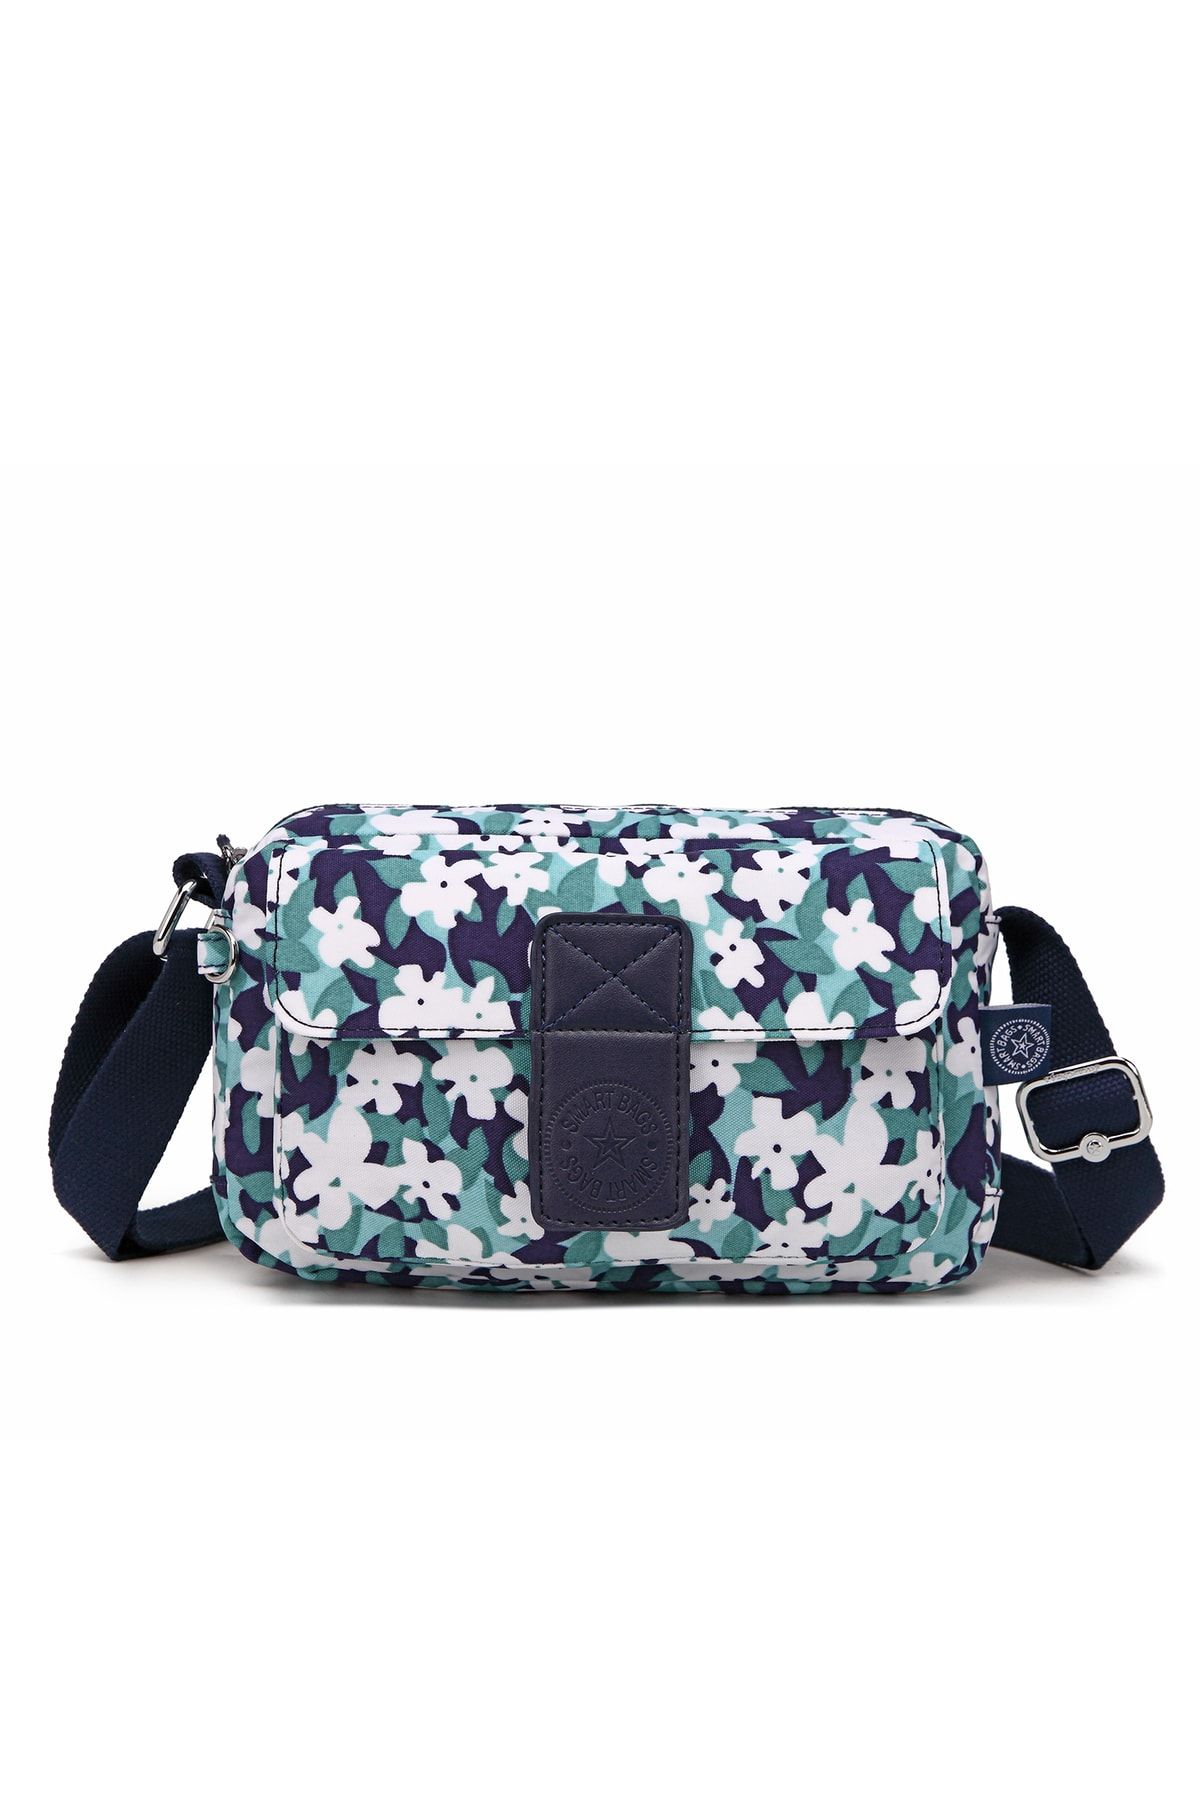 Smart Bags Postacı Kadın Çantası Krinkıl Kumaş 3098 Yeşil Flower